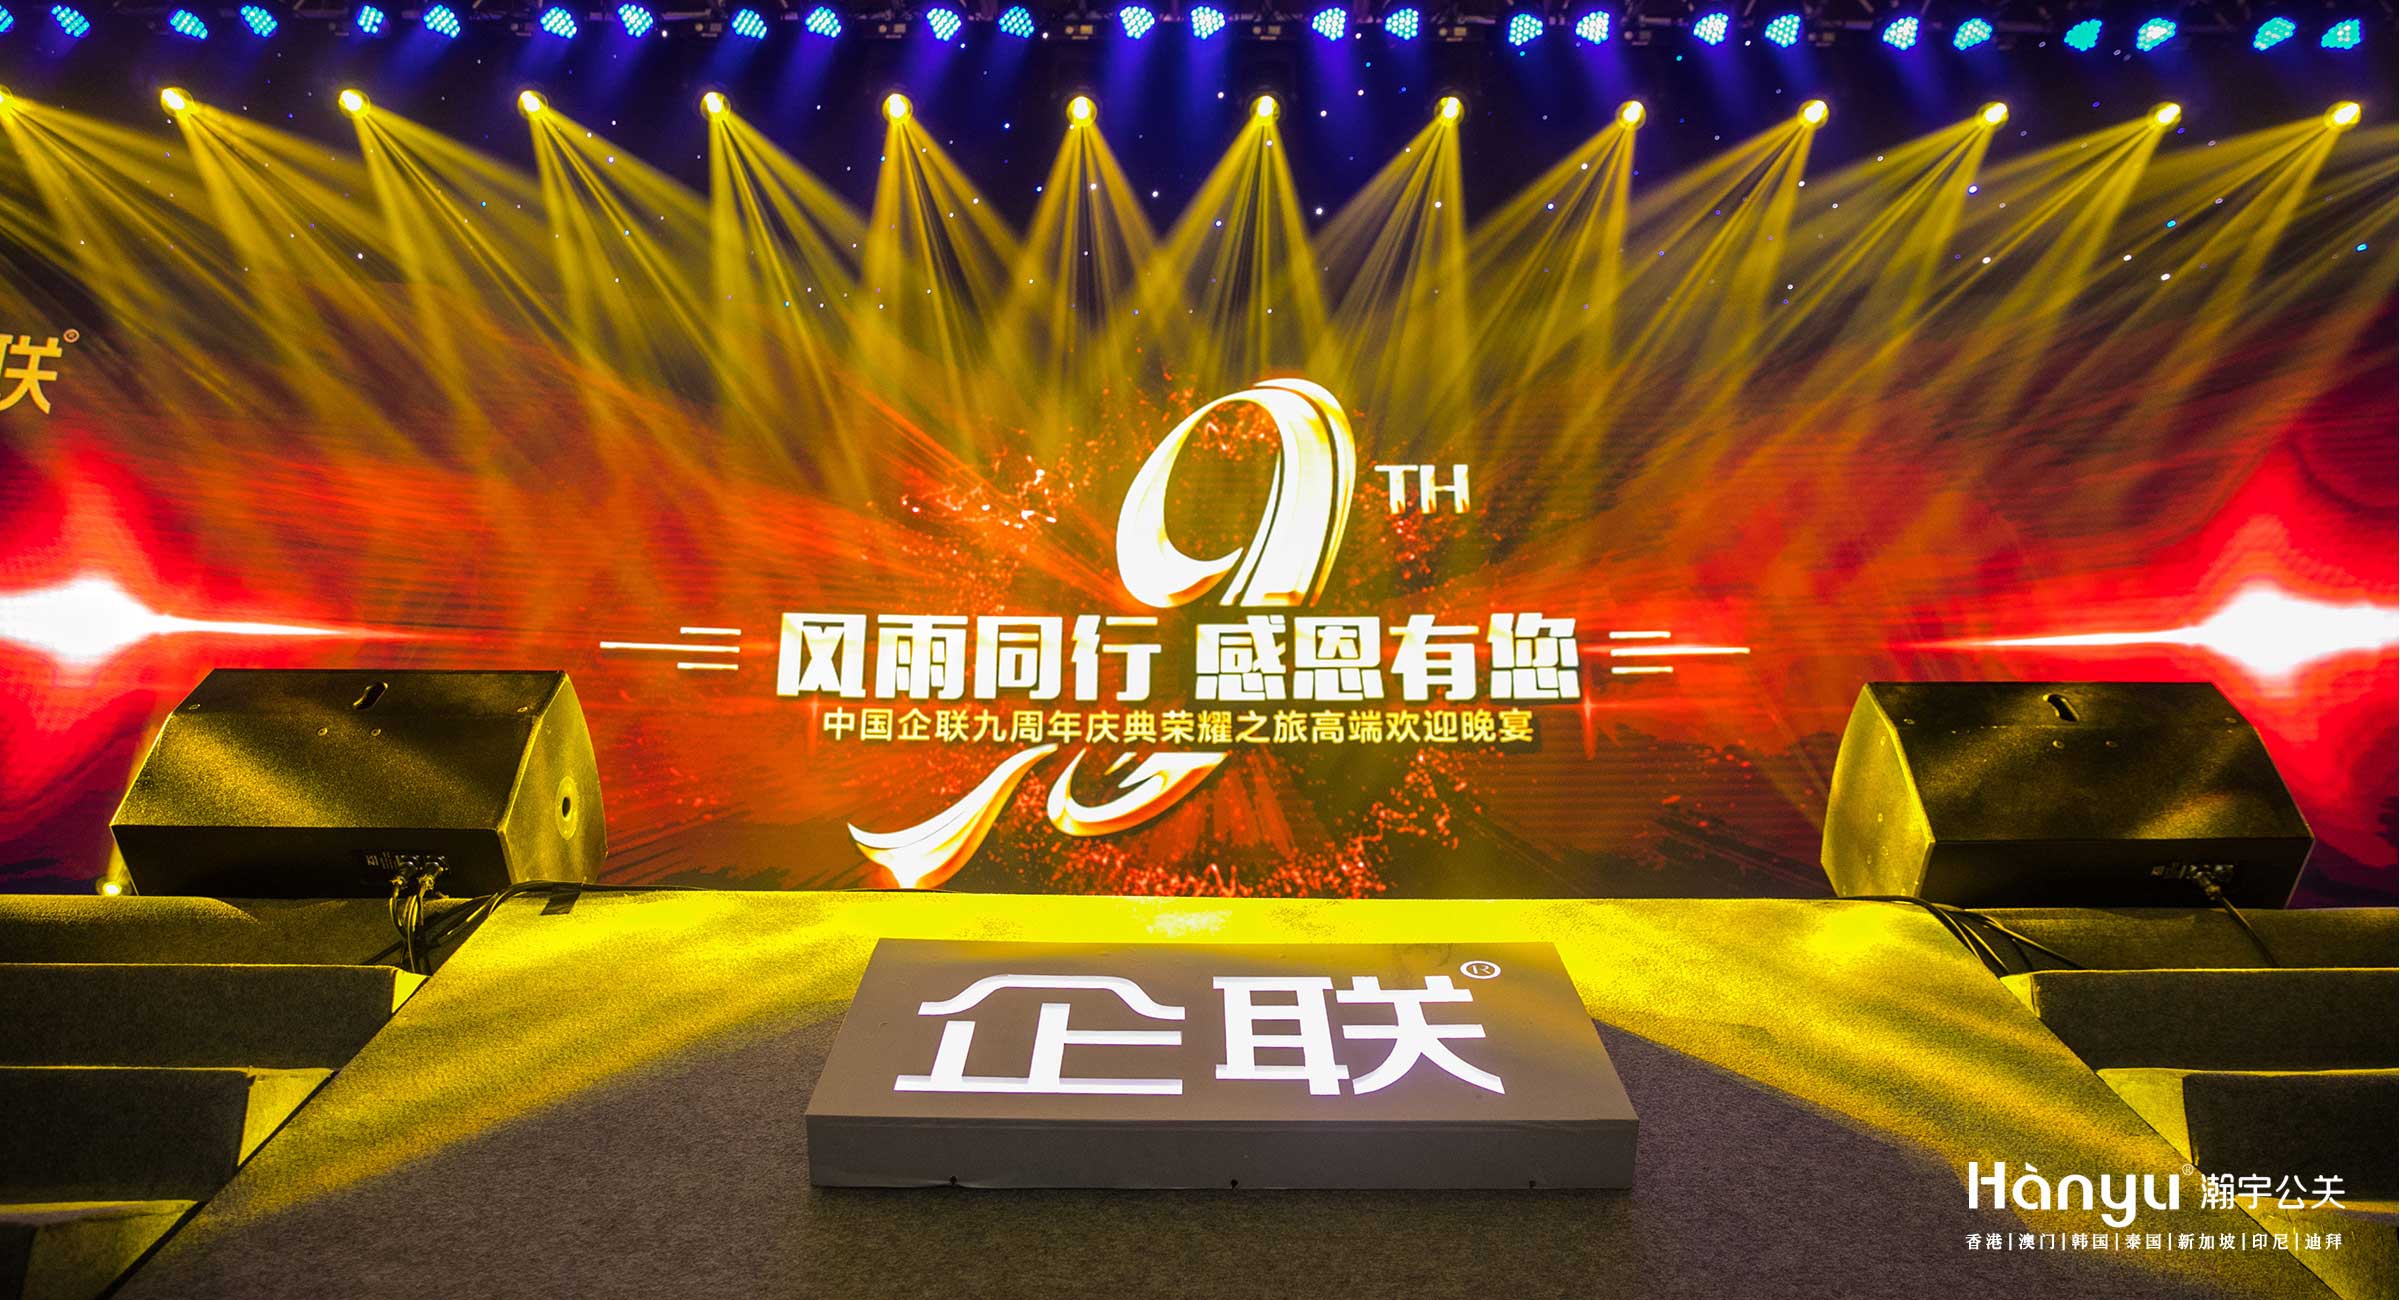 中国企联九周年庆典荣耀之旅高端欢迎晚宴